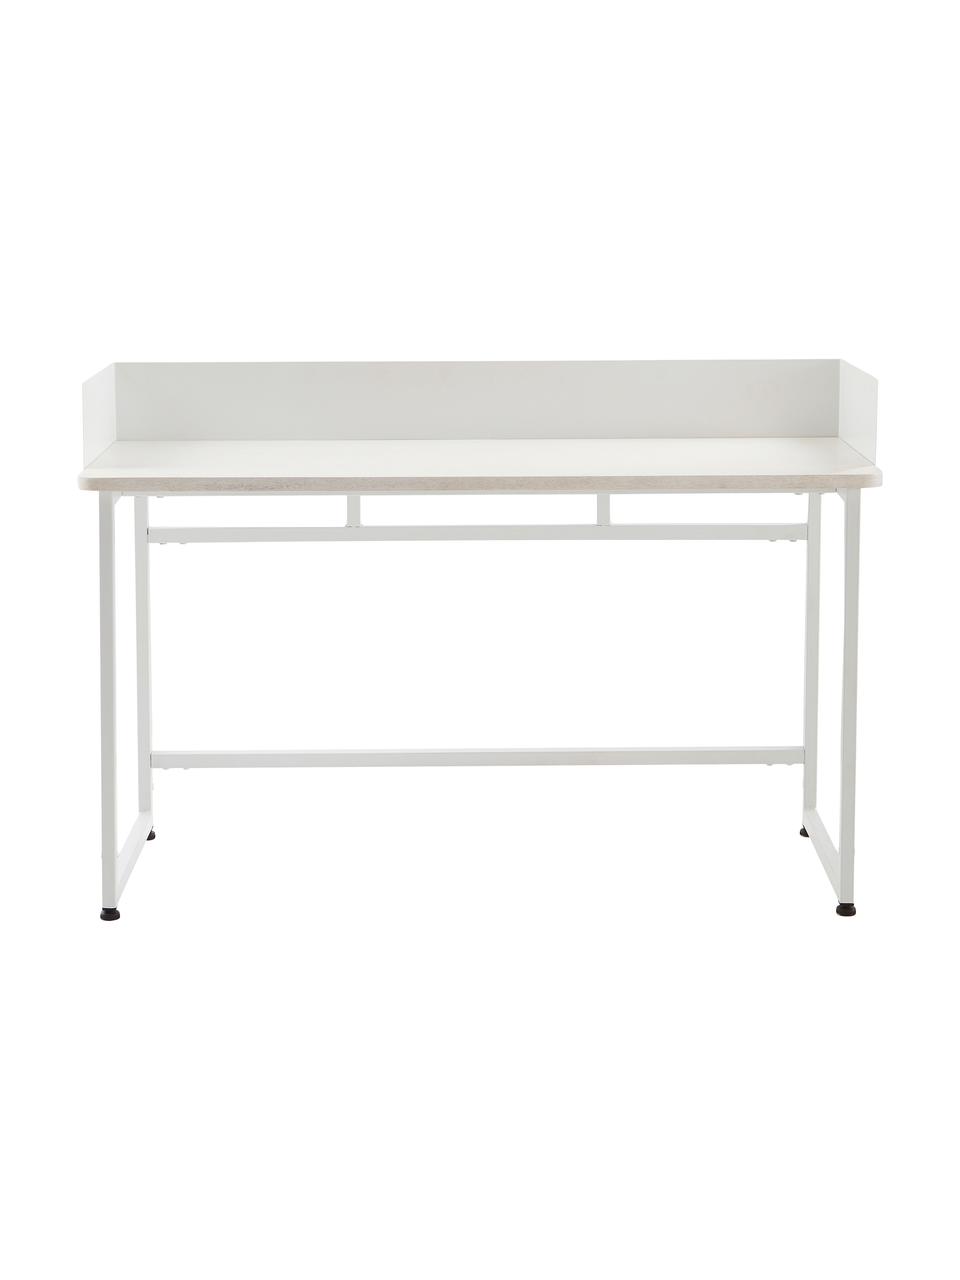 Úzký psací stůl Liberty, Bílá, Š 110 cm, H 45 cm